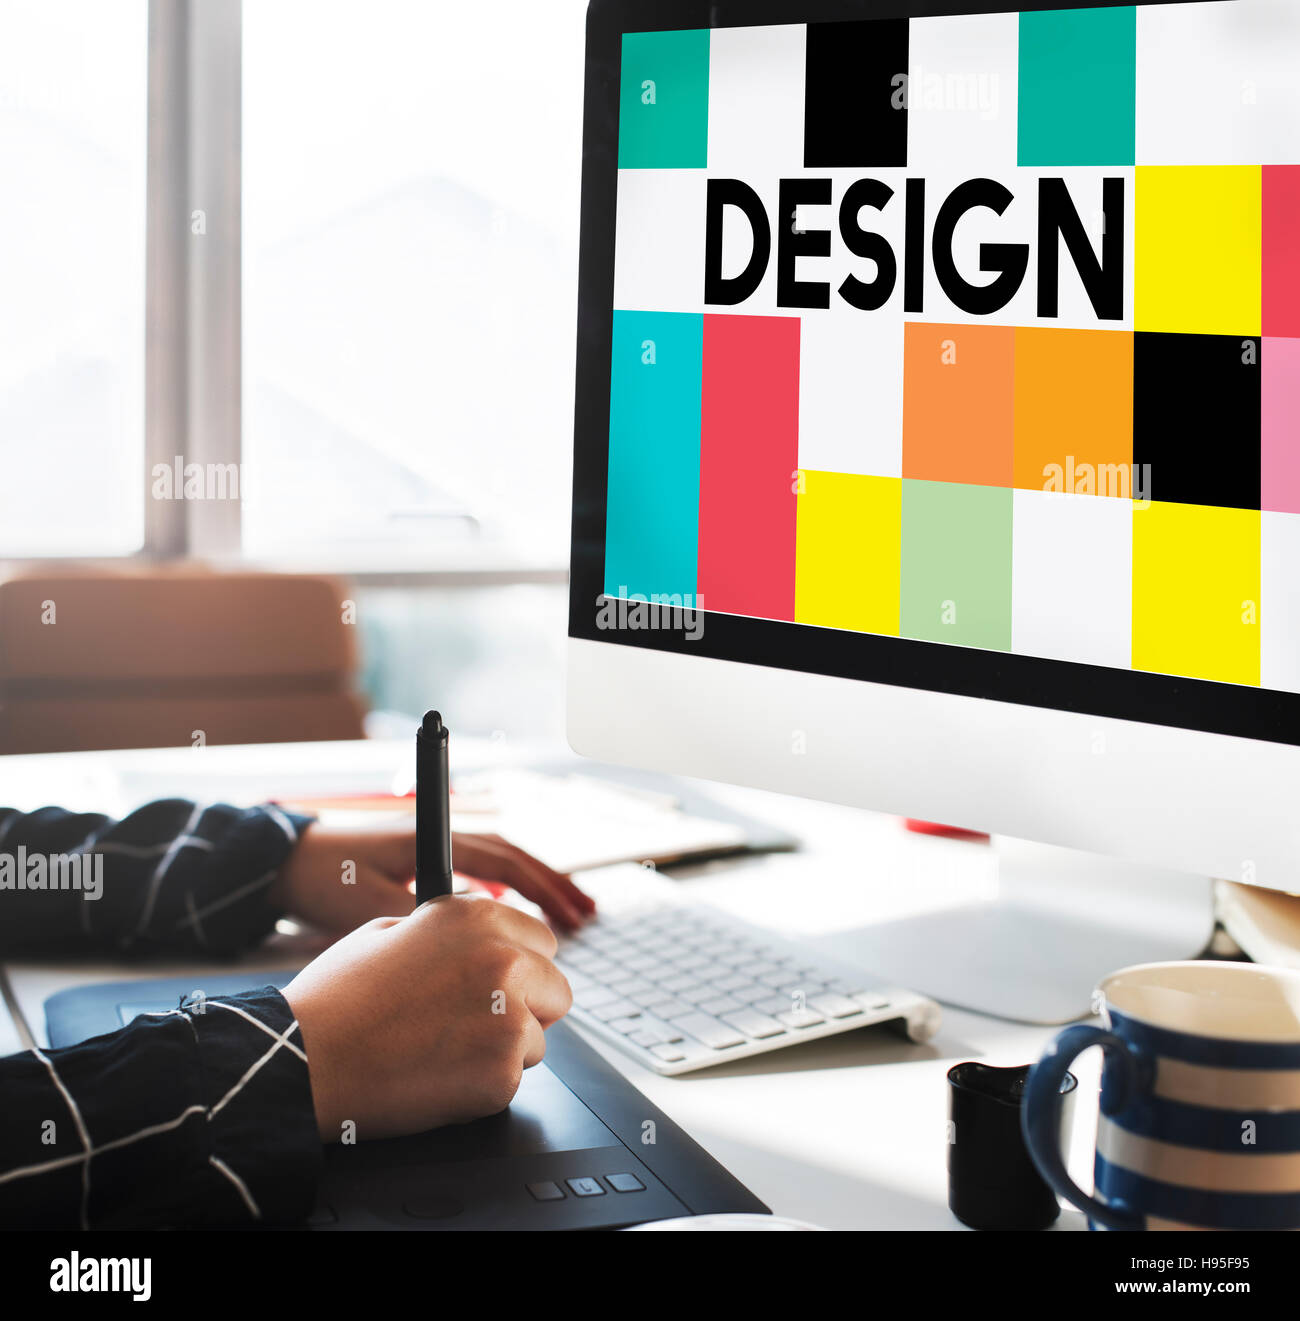 Creative Art Design Concept mot multicolore Banque D'Images